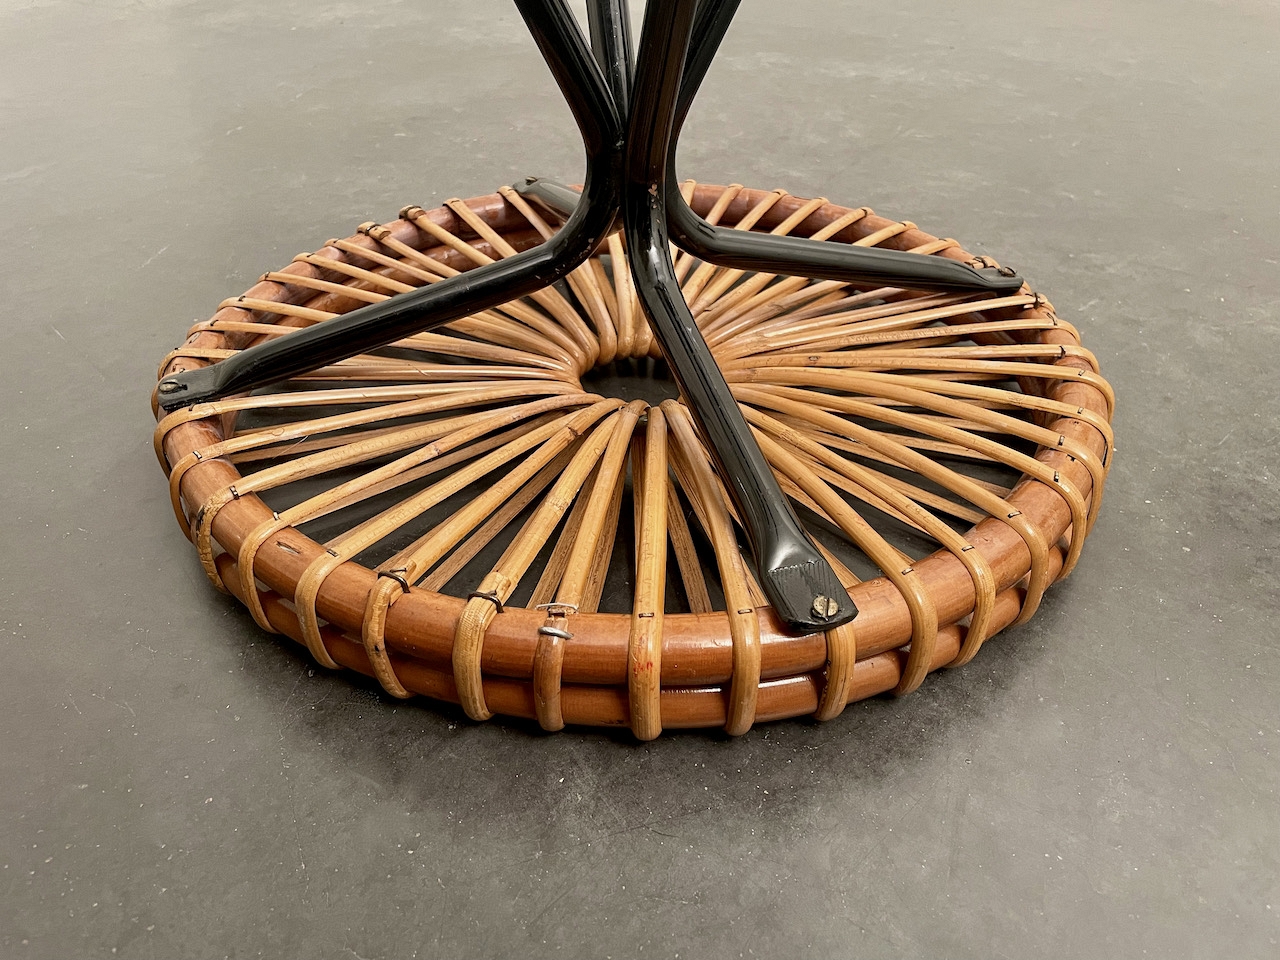 Rattan stools by D. van Sliedregt